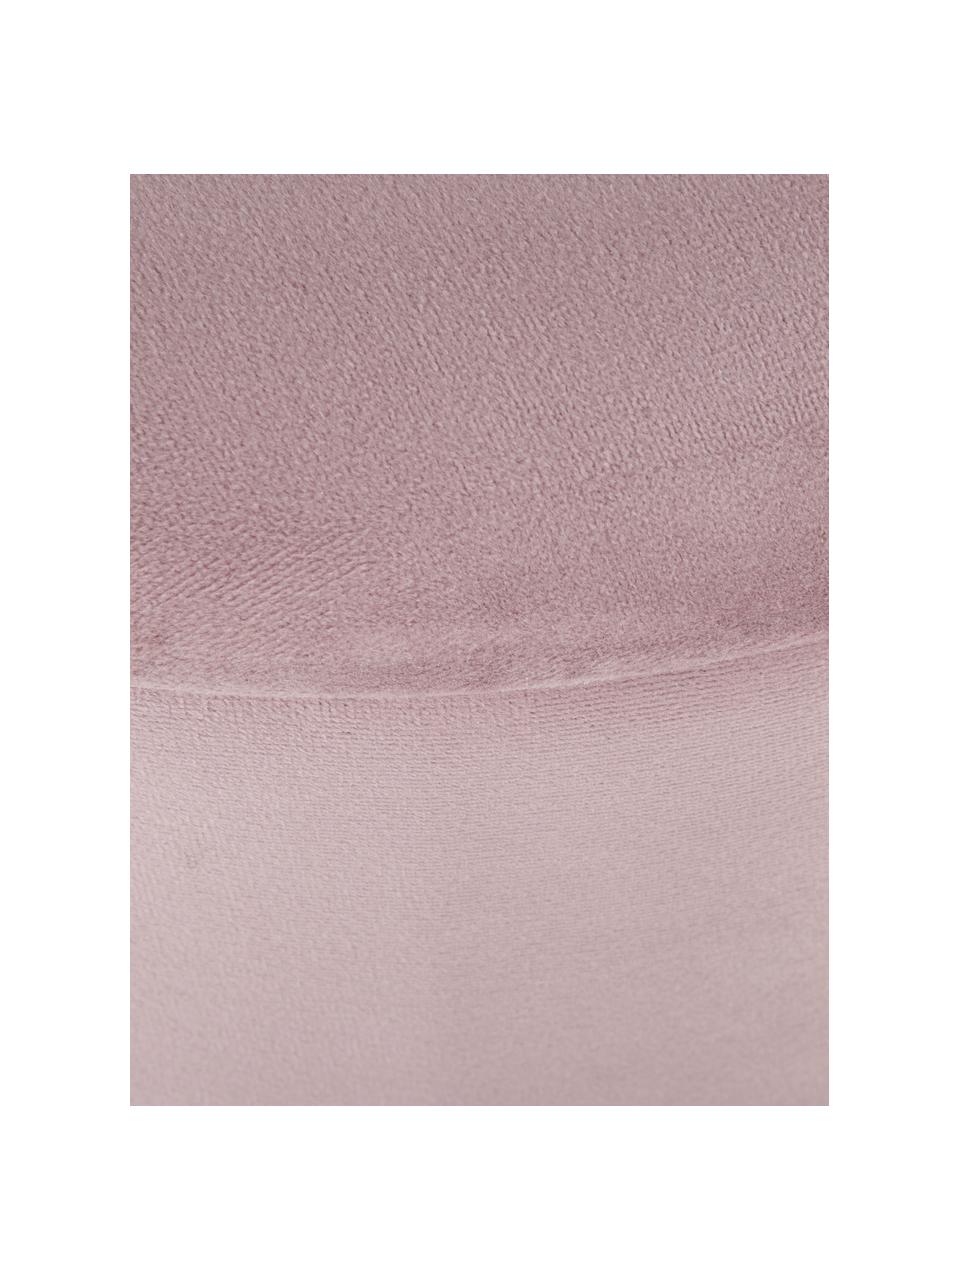 Fluwelen kruk Polina met opbergruimte, Bekleding: polyester fluweel, Frame: gelakt metaal, Fluweel roze, messingkleurig, Ø 35 x H 45 cm